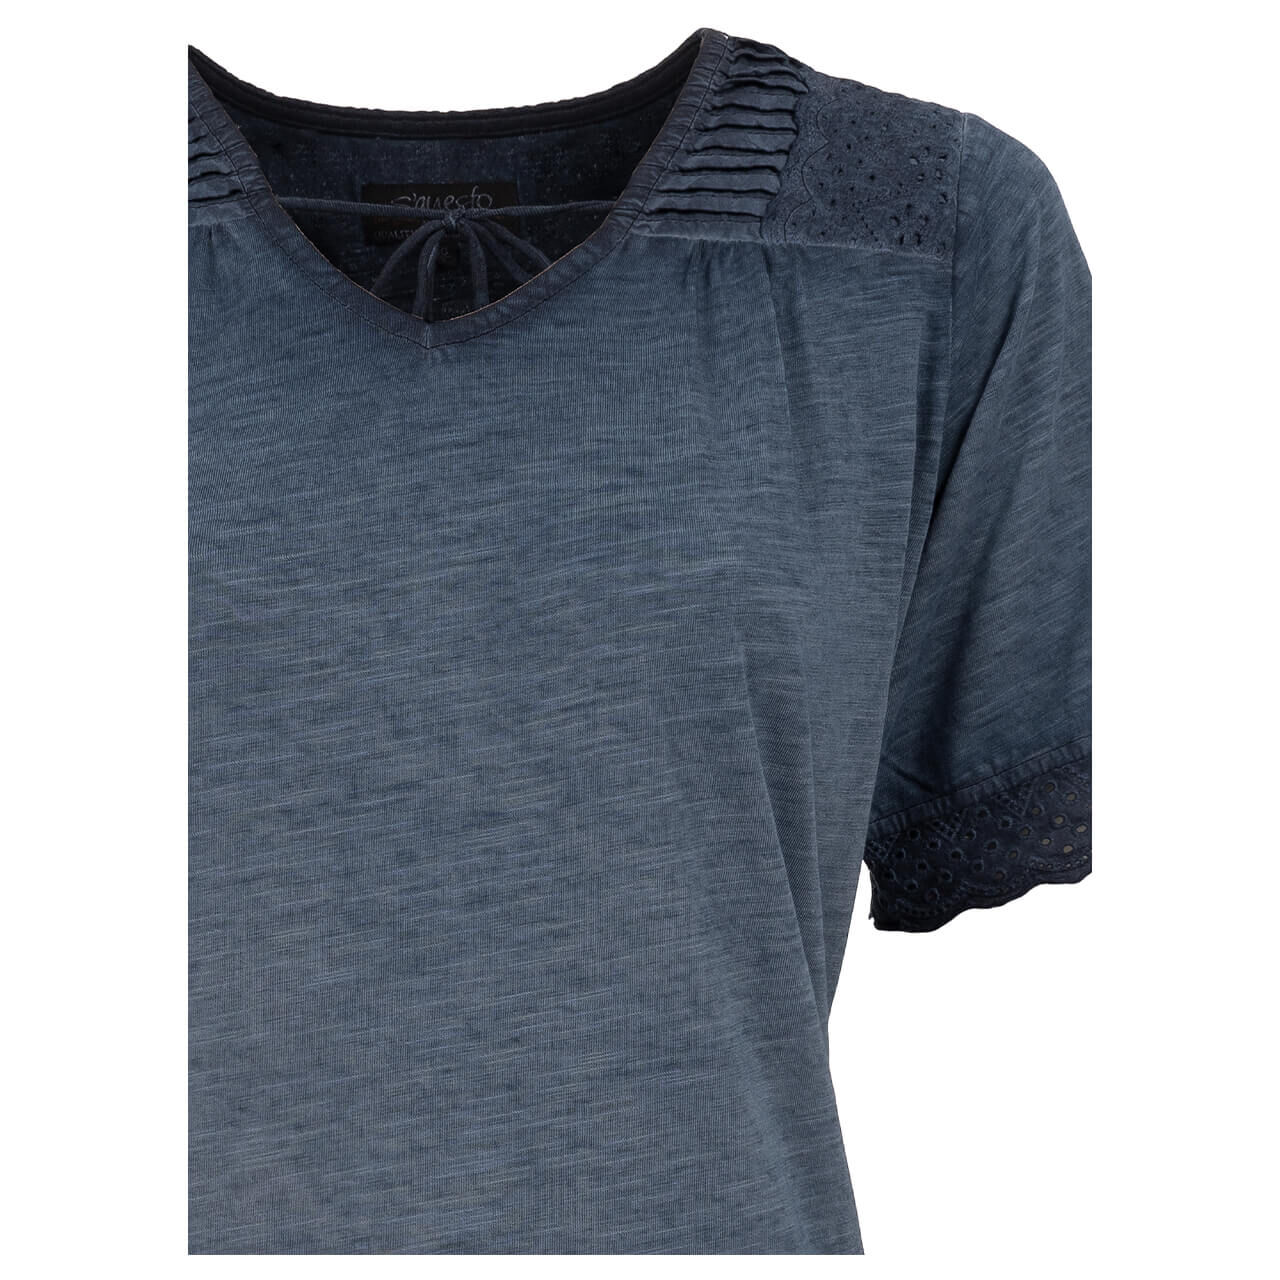 Soquesto T-Shirt für Damen in Mittelblau, FarbNr.: 2800